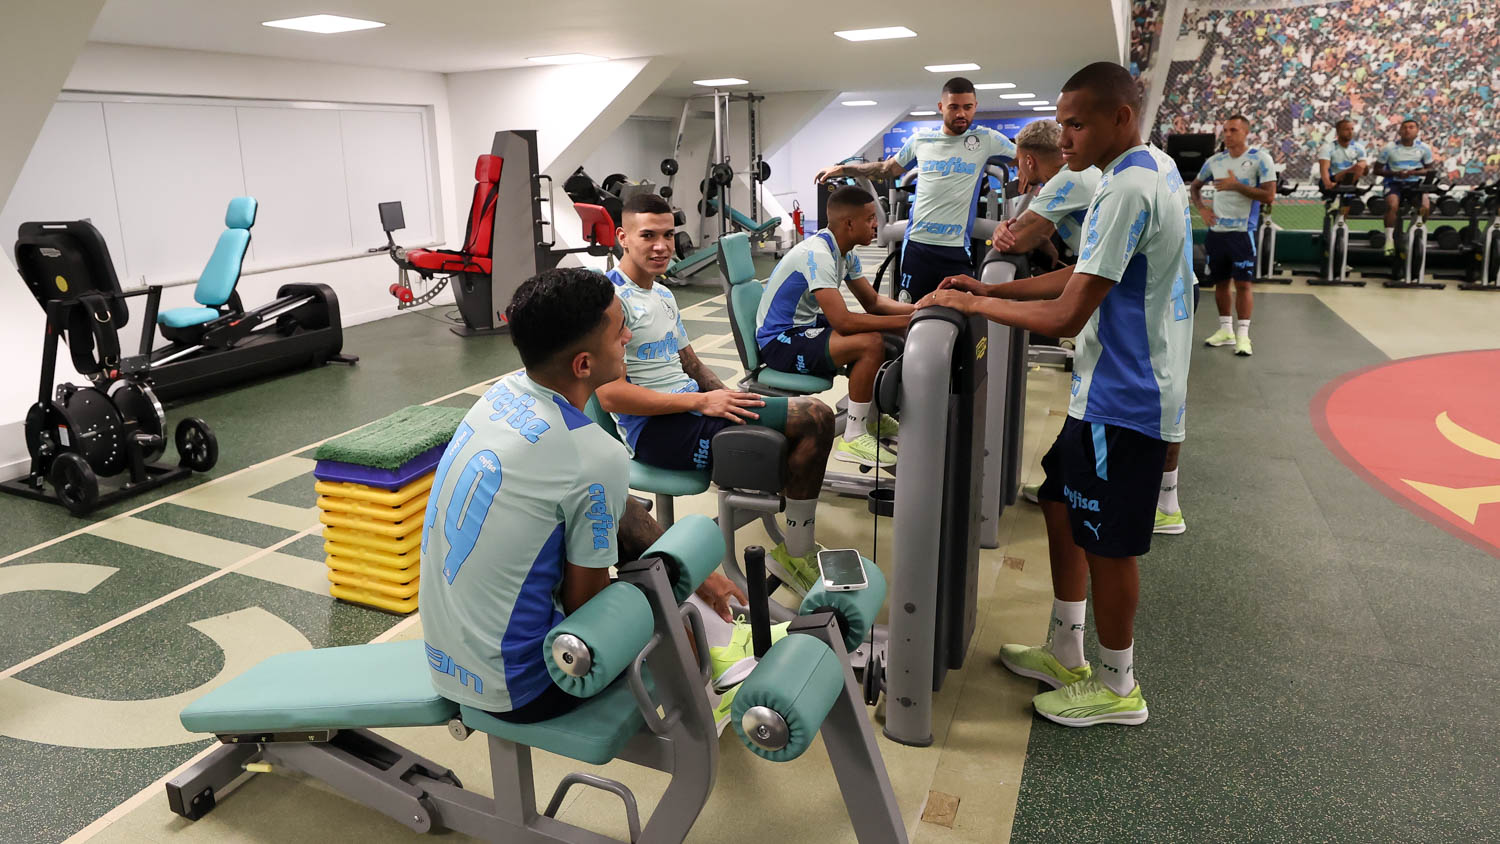 Após vitória, Naves comenta aprendizado com o elenco alviverde: 'O treino  reflete no jogo' – Palmeiras